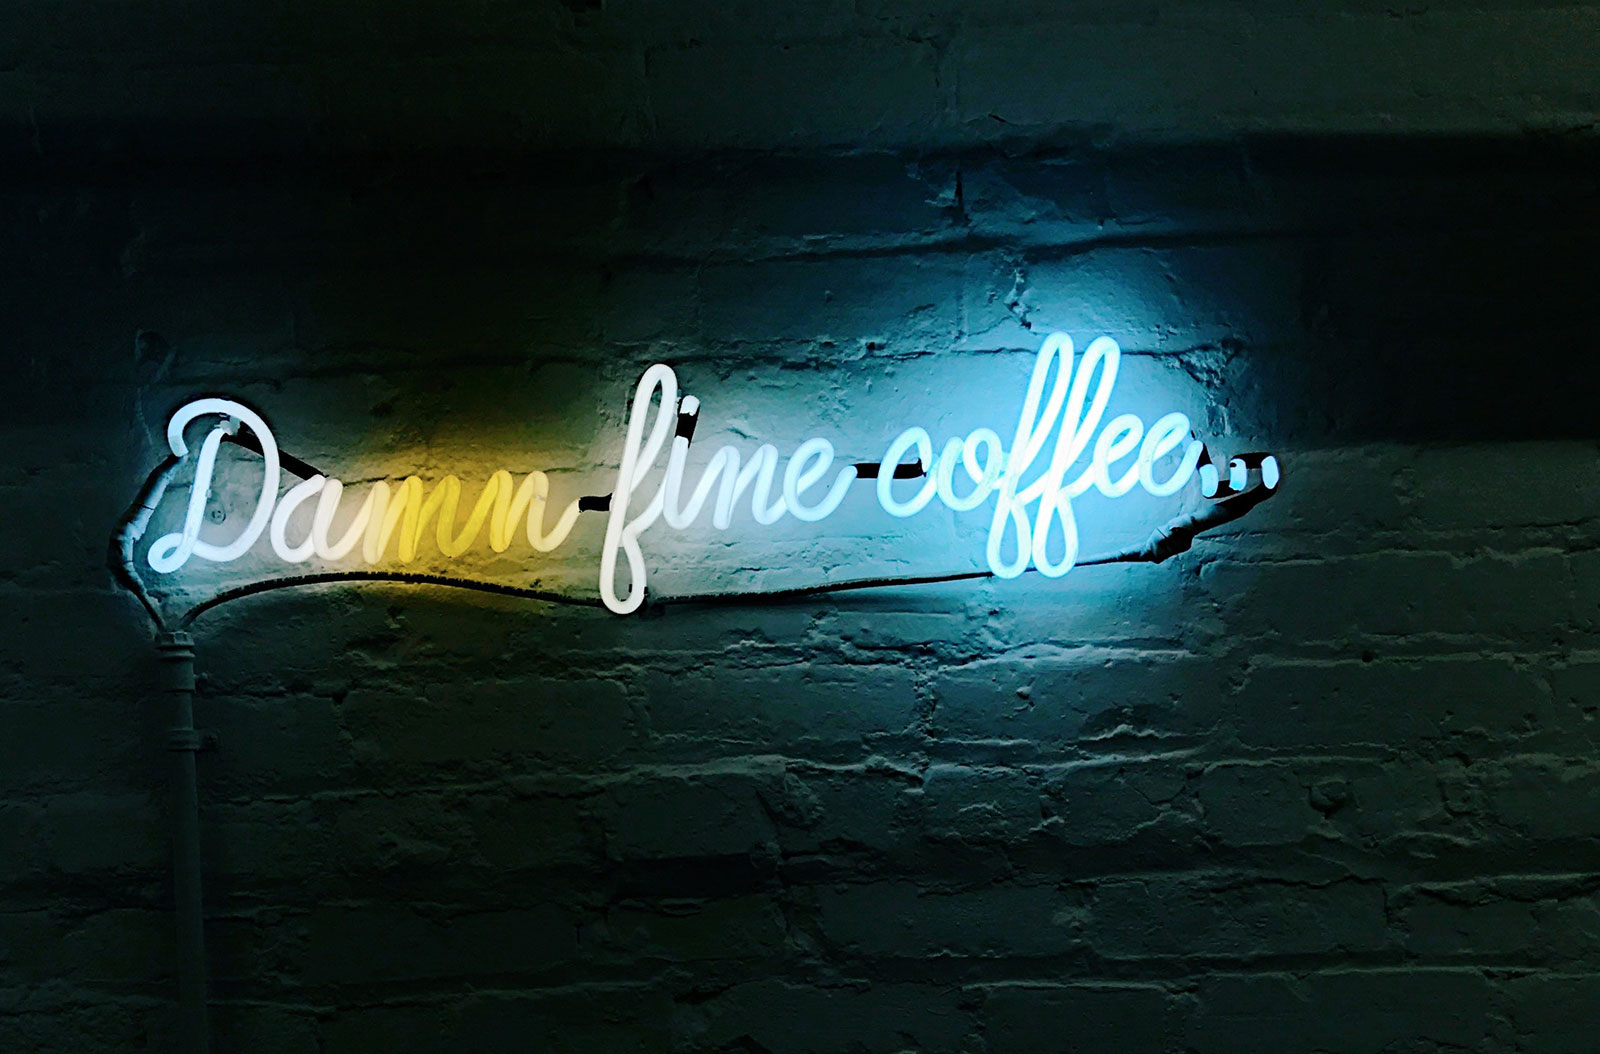 Das richtige Geschenk für Kaffeeliebhaber: Personalisierter Kaffee